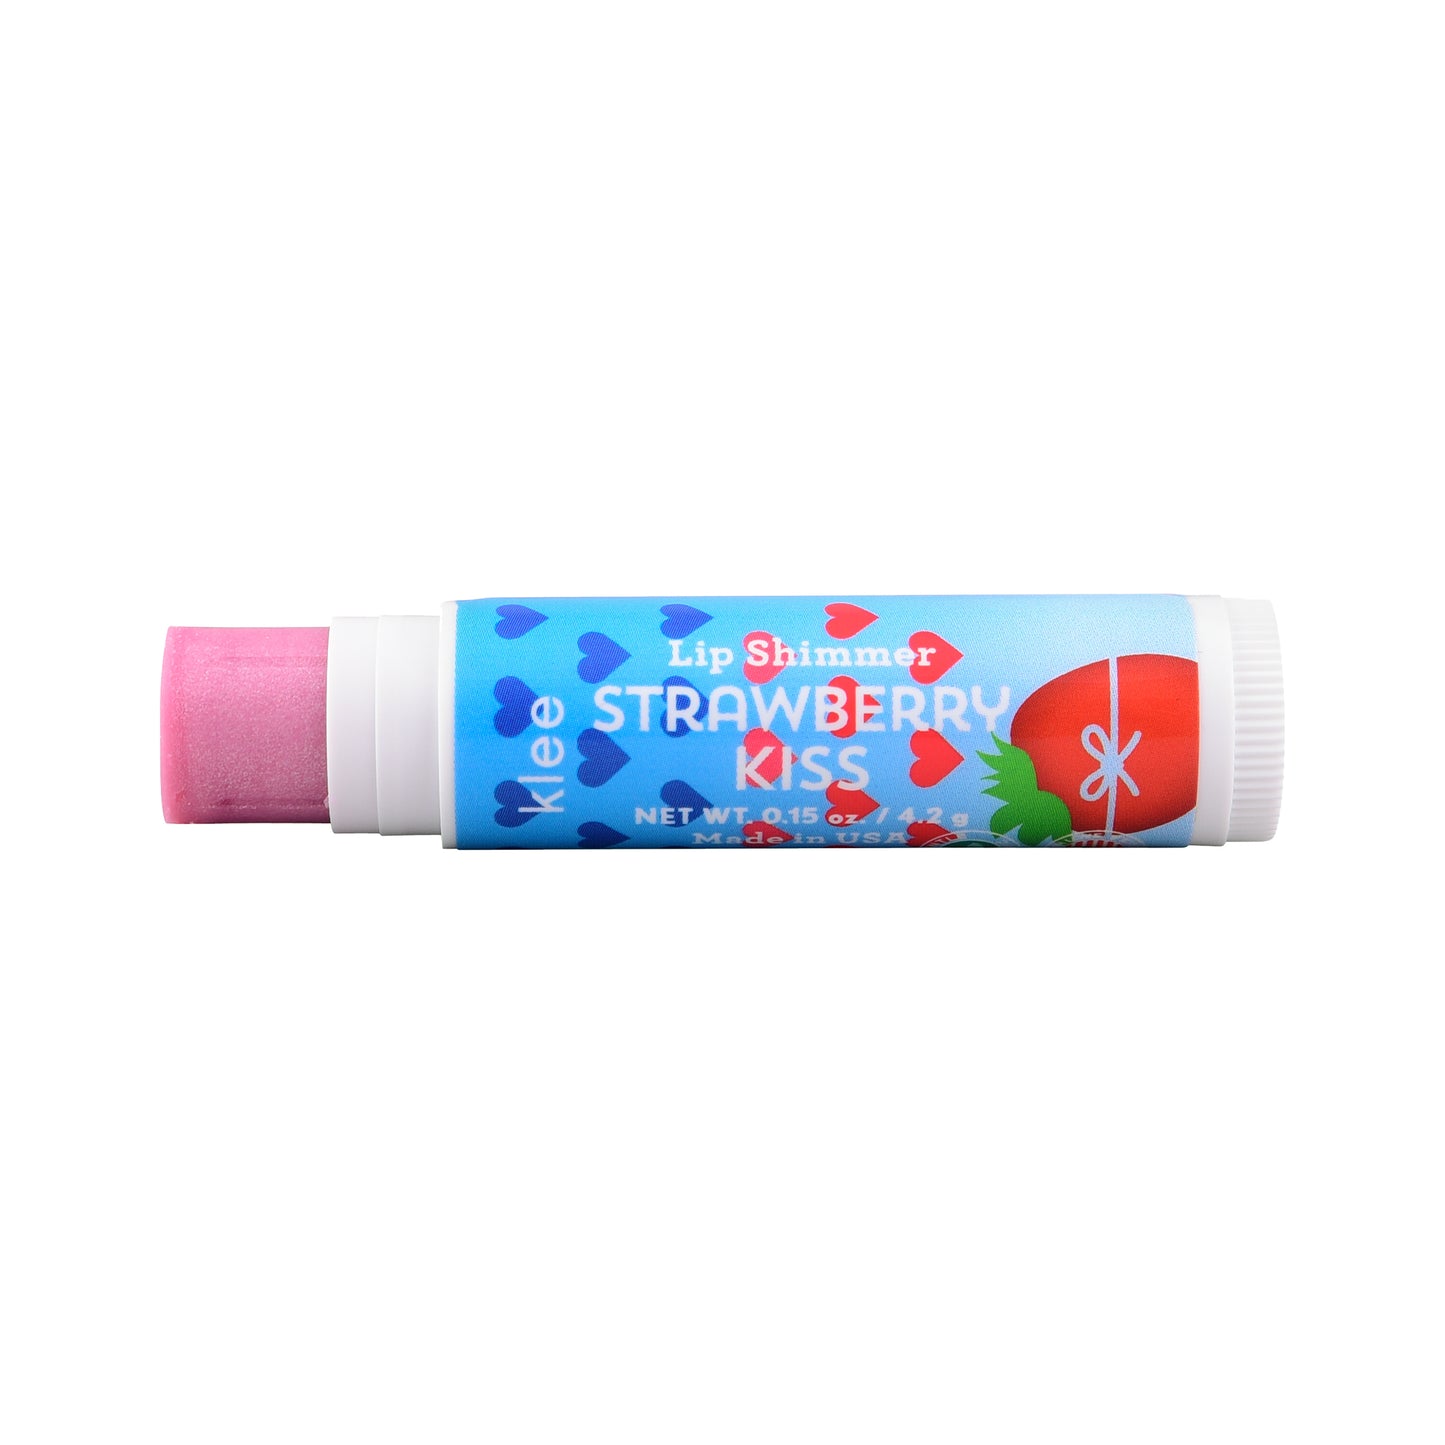 Klee Naturals Strawberry Kiss Natural Lip Shimmer